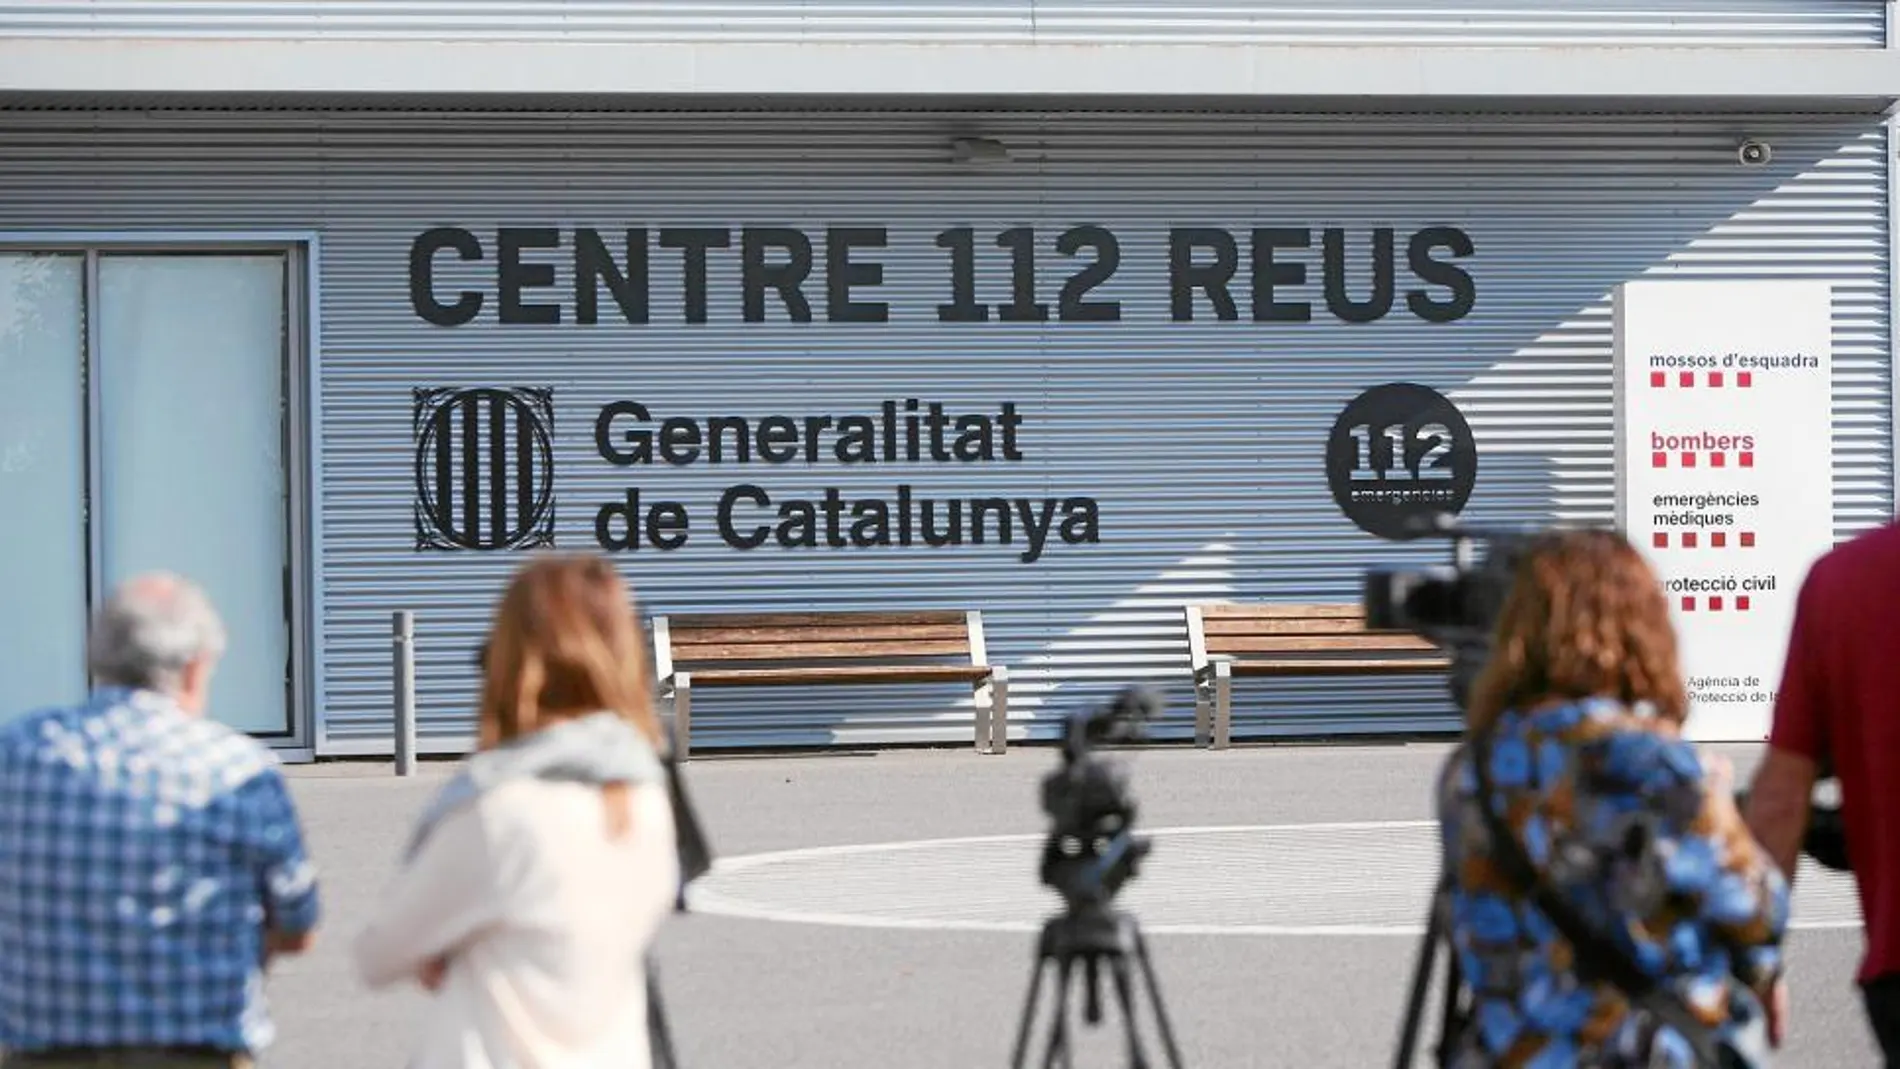 El centro del 112 de la localidad tarraconense de Reus que fue registrado ayer por la Guardia Civil en busca de pruebas